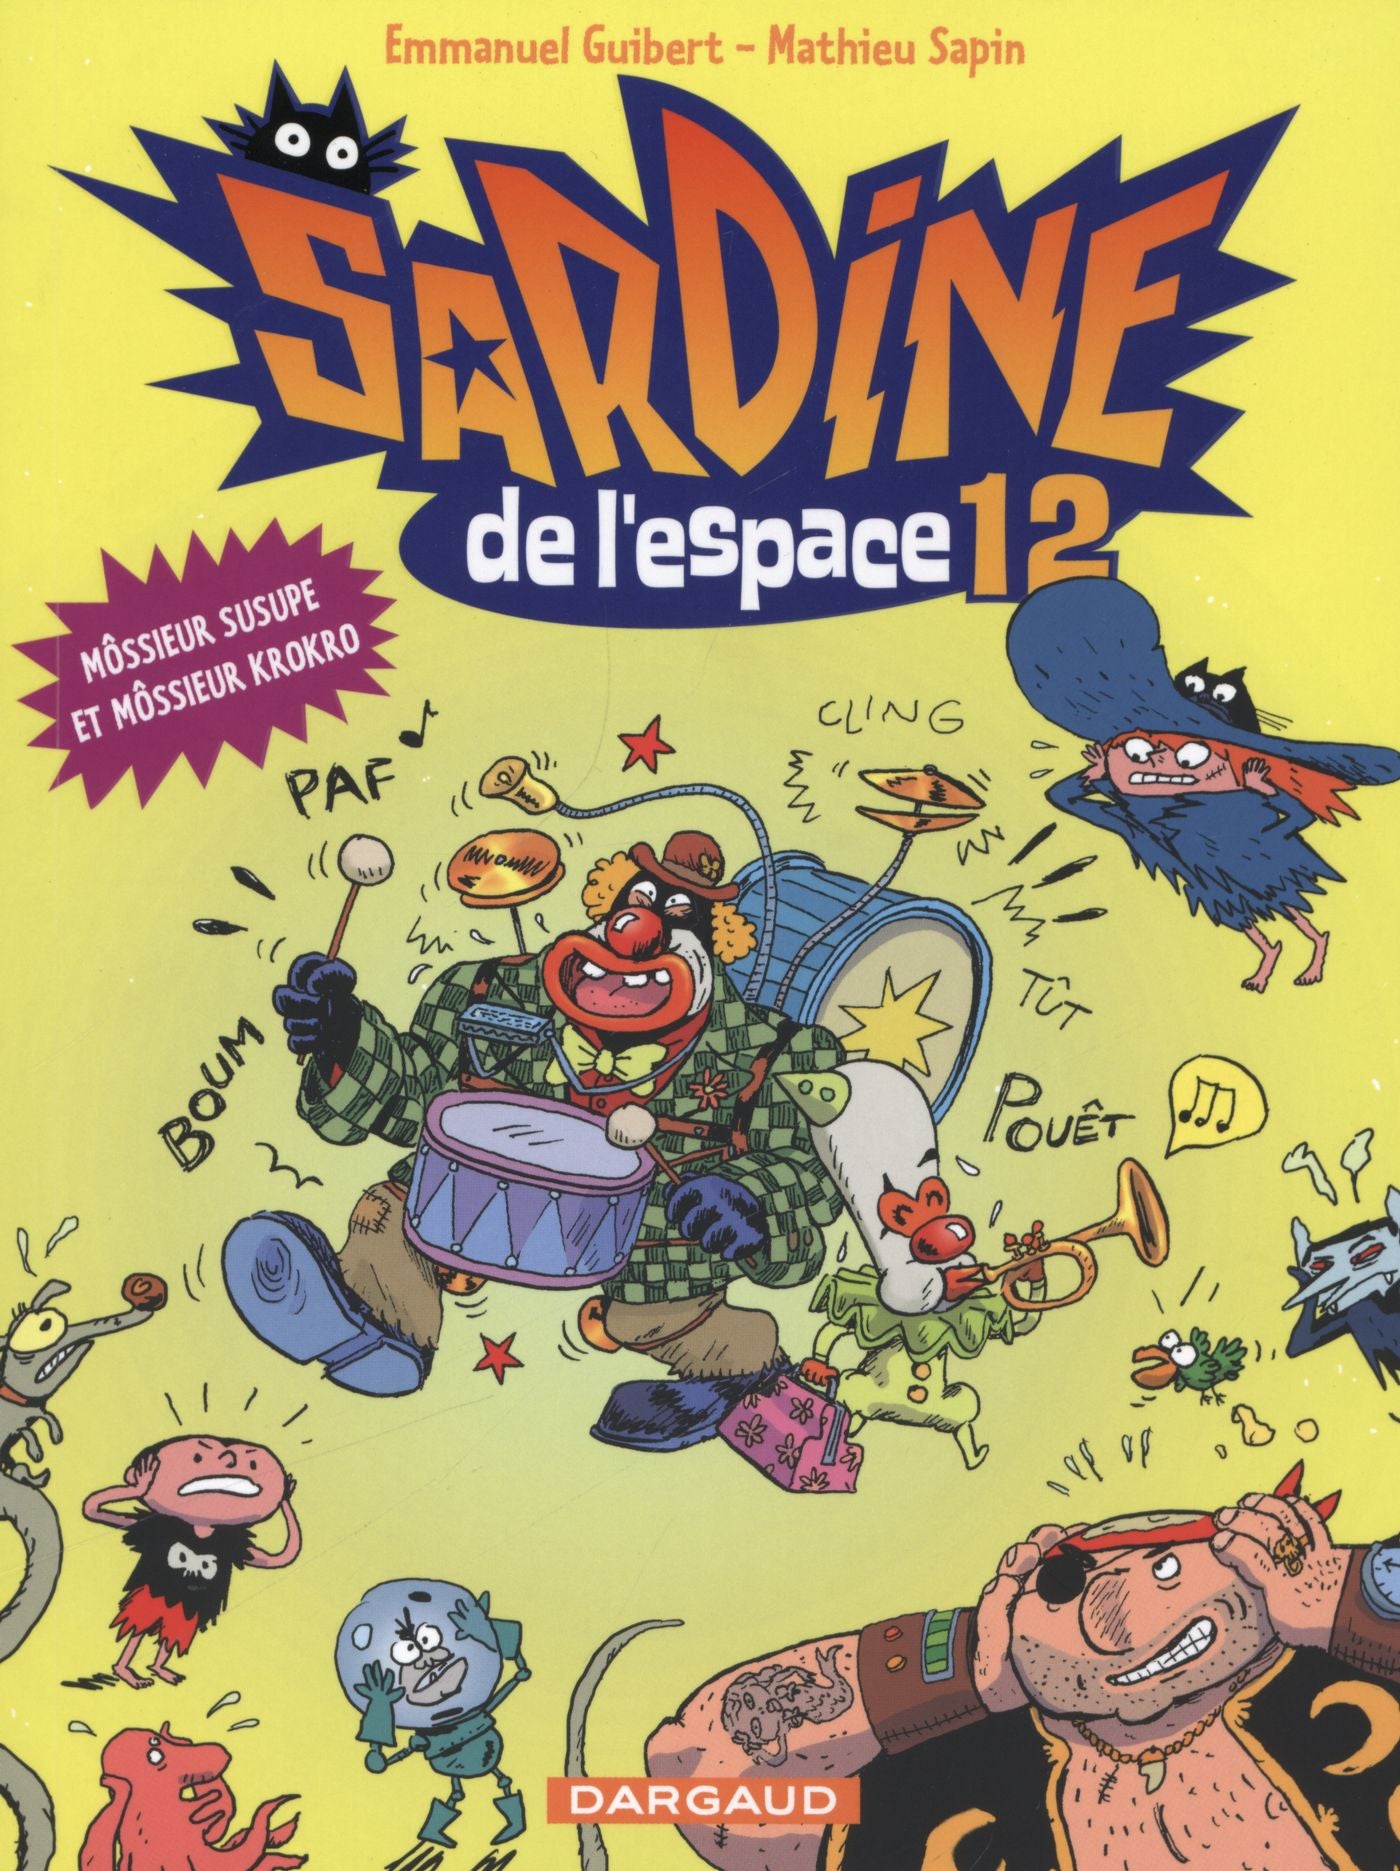 Sardine de l'espace # 12 : Môssieur Susupe et Môssieur Kroko - Emmanuel Guibert